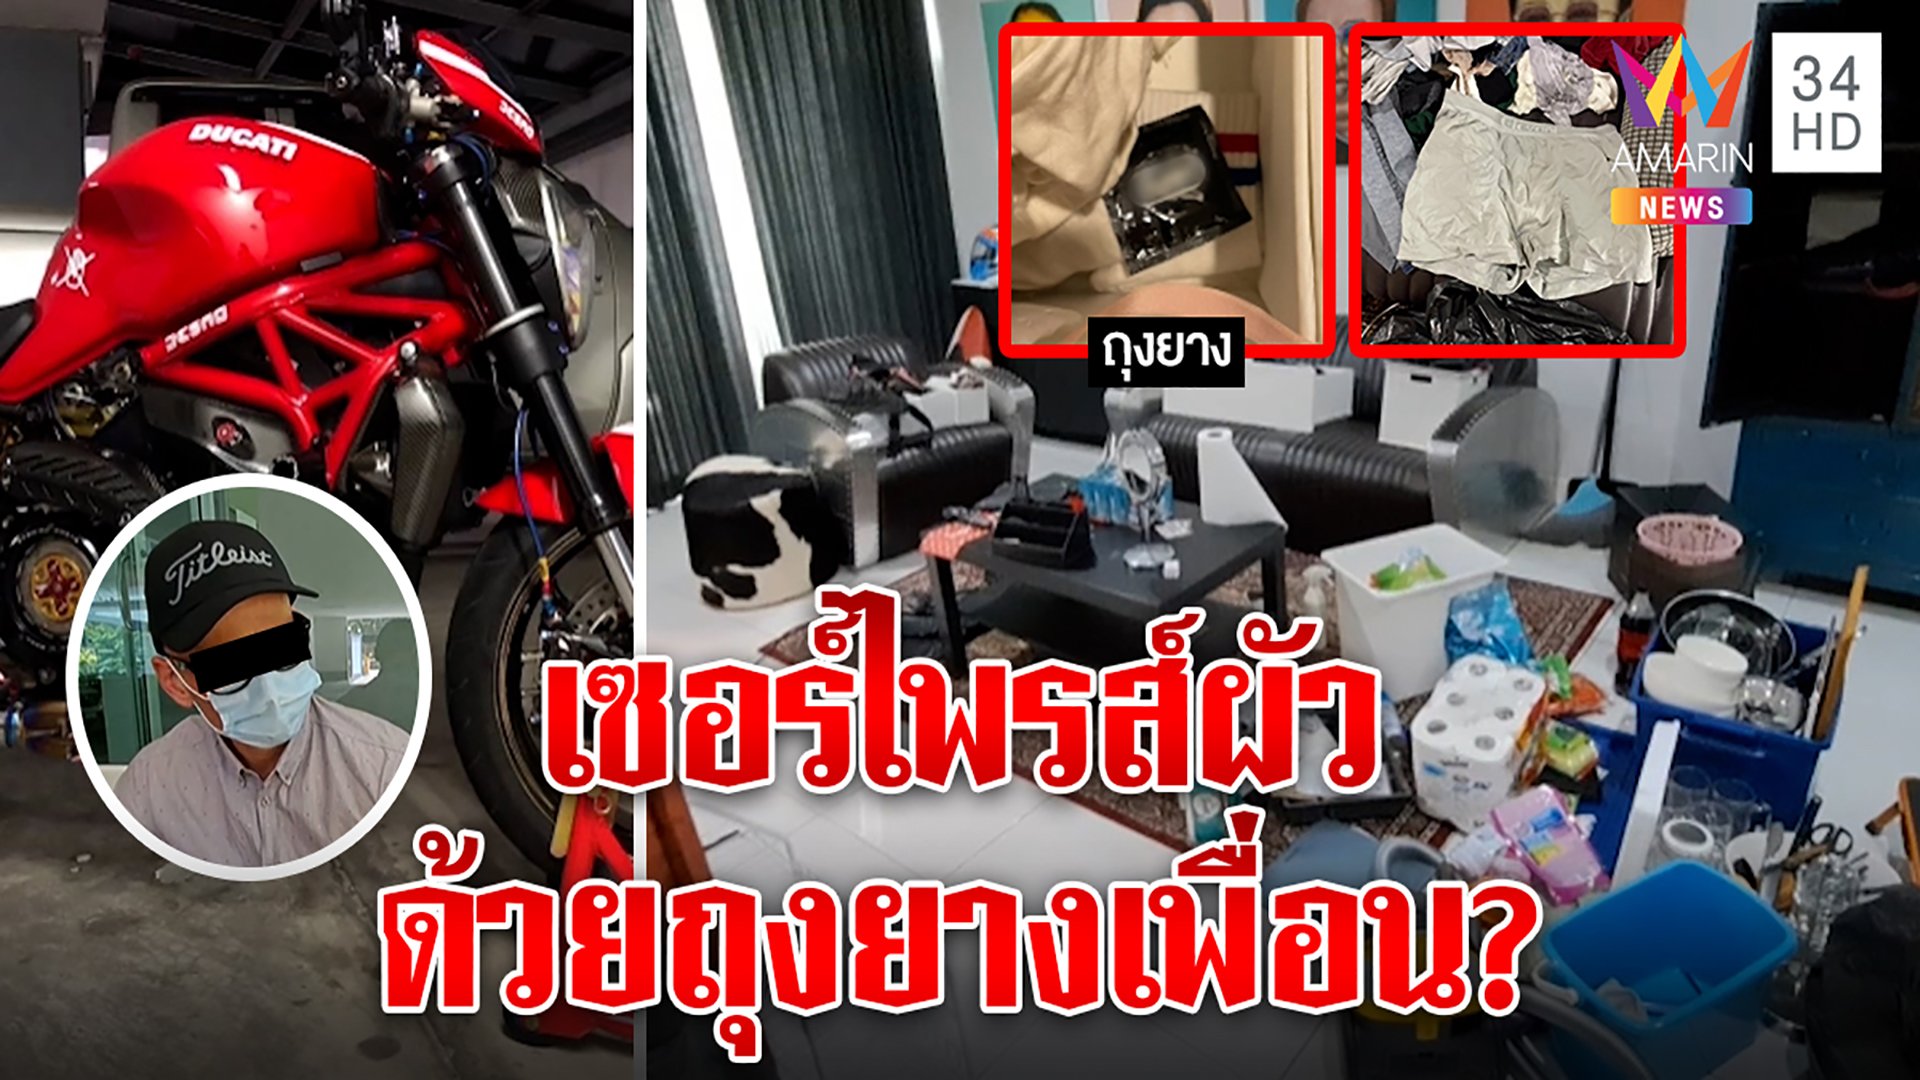 สาวไทยช็อกผัวฝรั่งบินเซอร์ไพรส์ แจงถุงยางใช้แล้วเป็นของเพื่อน แต่รถผัวหนูขายค่ะ | ทุบโต๊ะข่าว | 3 มิ.ย. 65 | AMARIN TVHD34